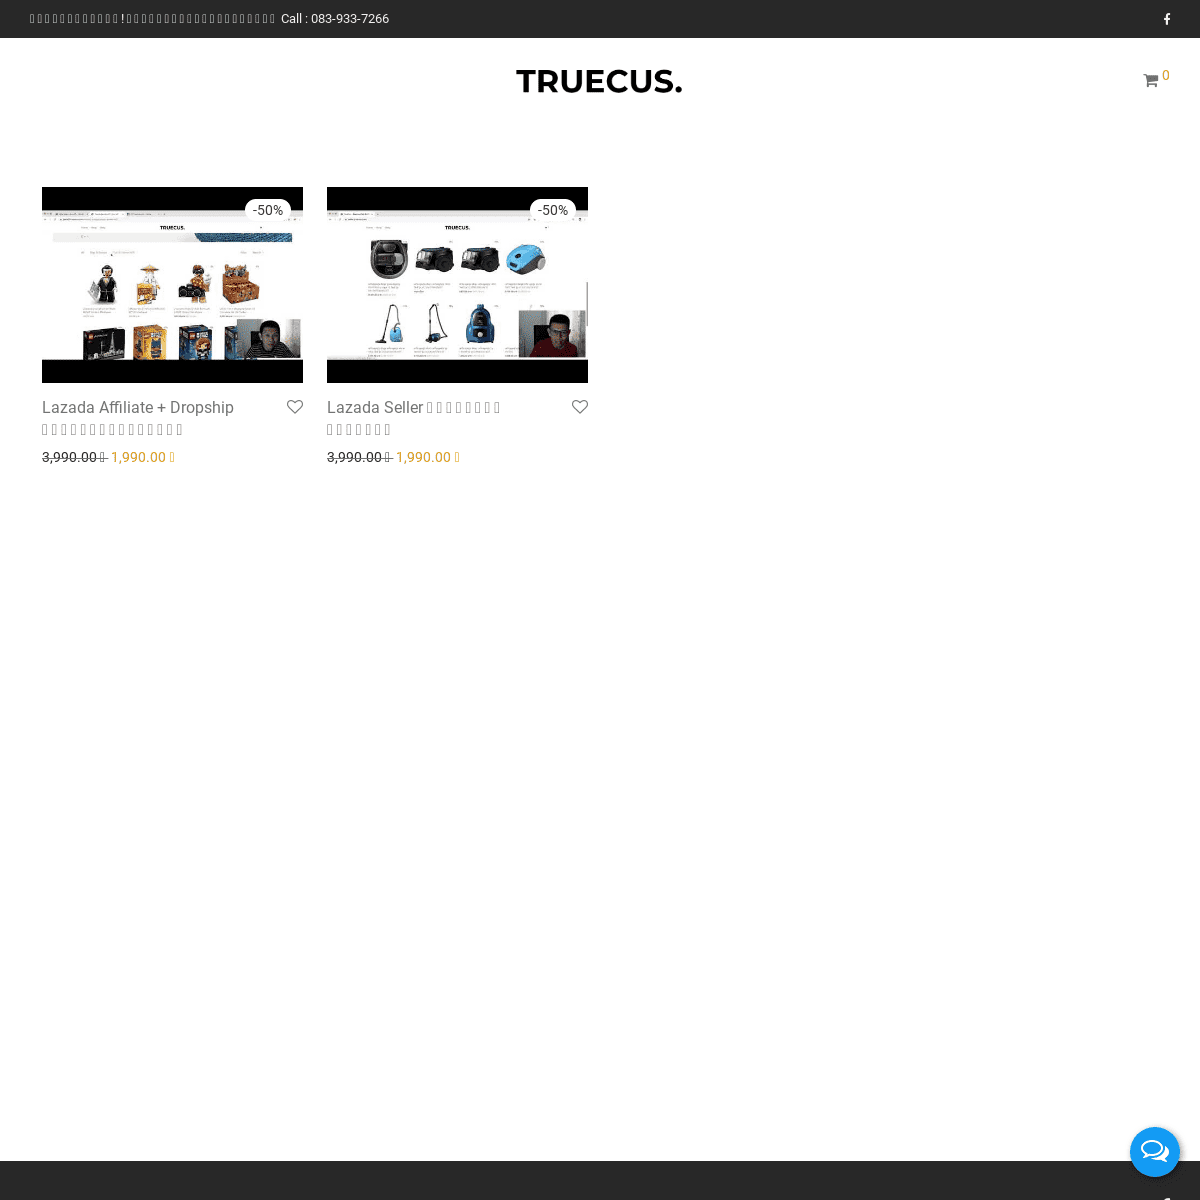 A complete backup of truecus.com